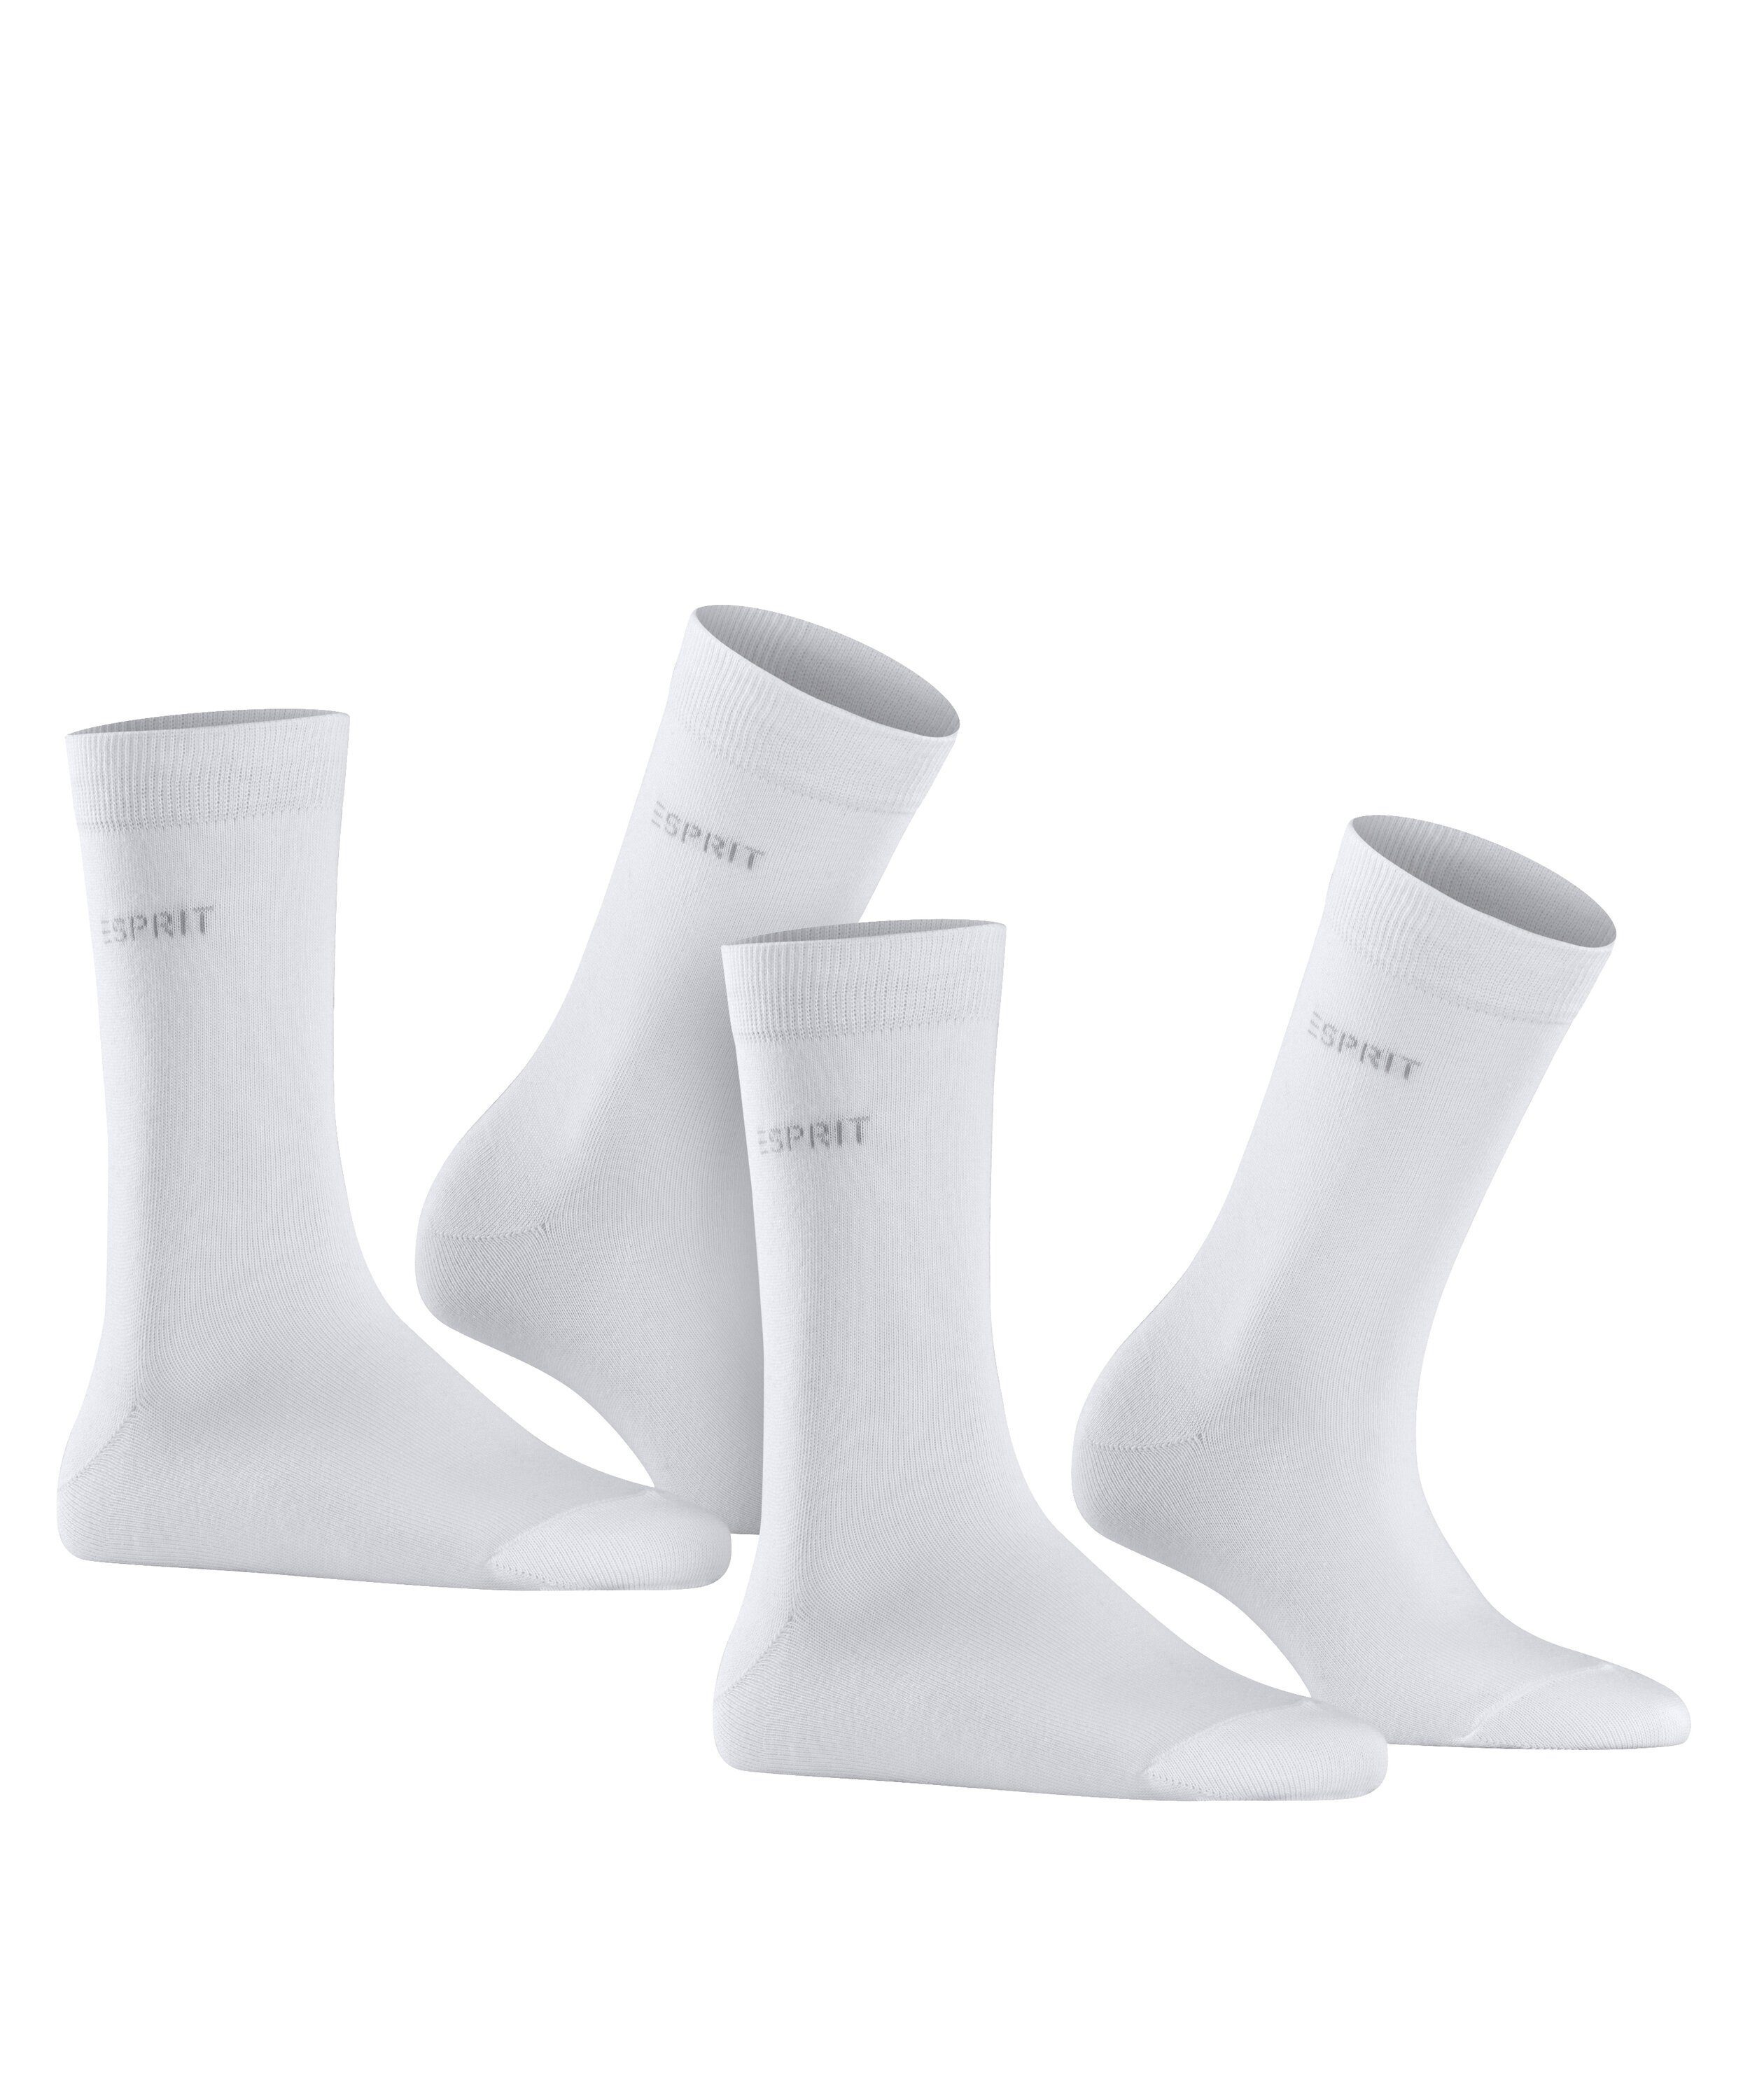 Esprit (2000) Uni white (2-Paar) Socken 2-Pack